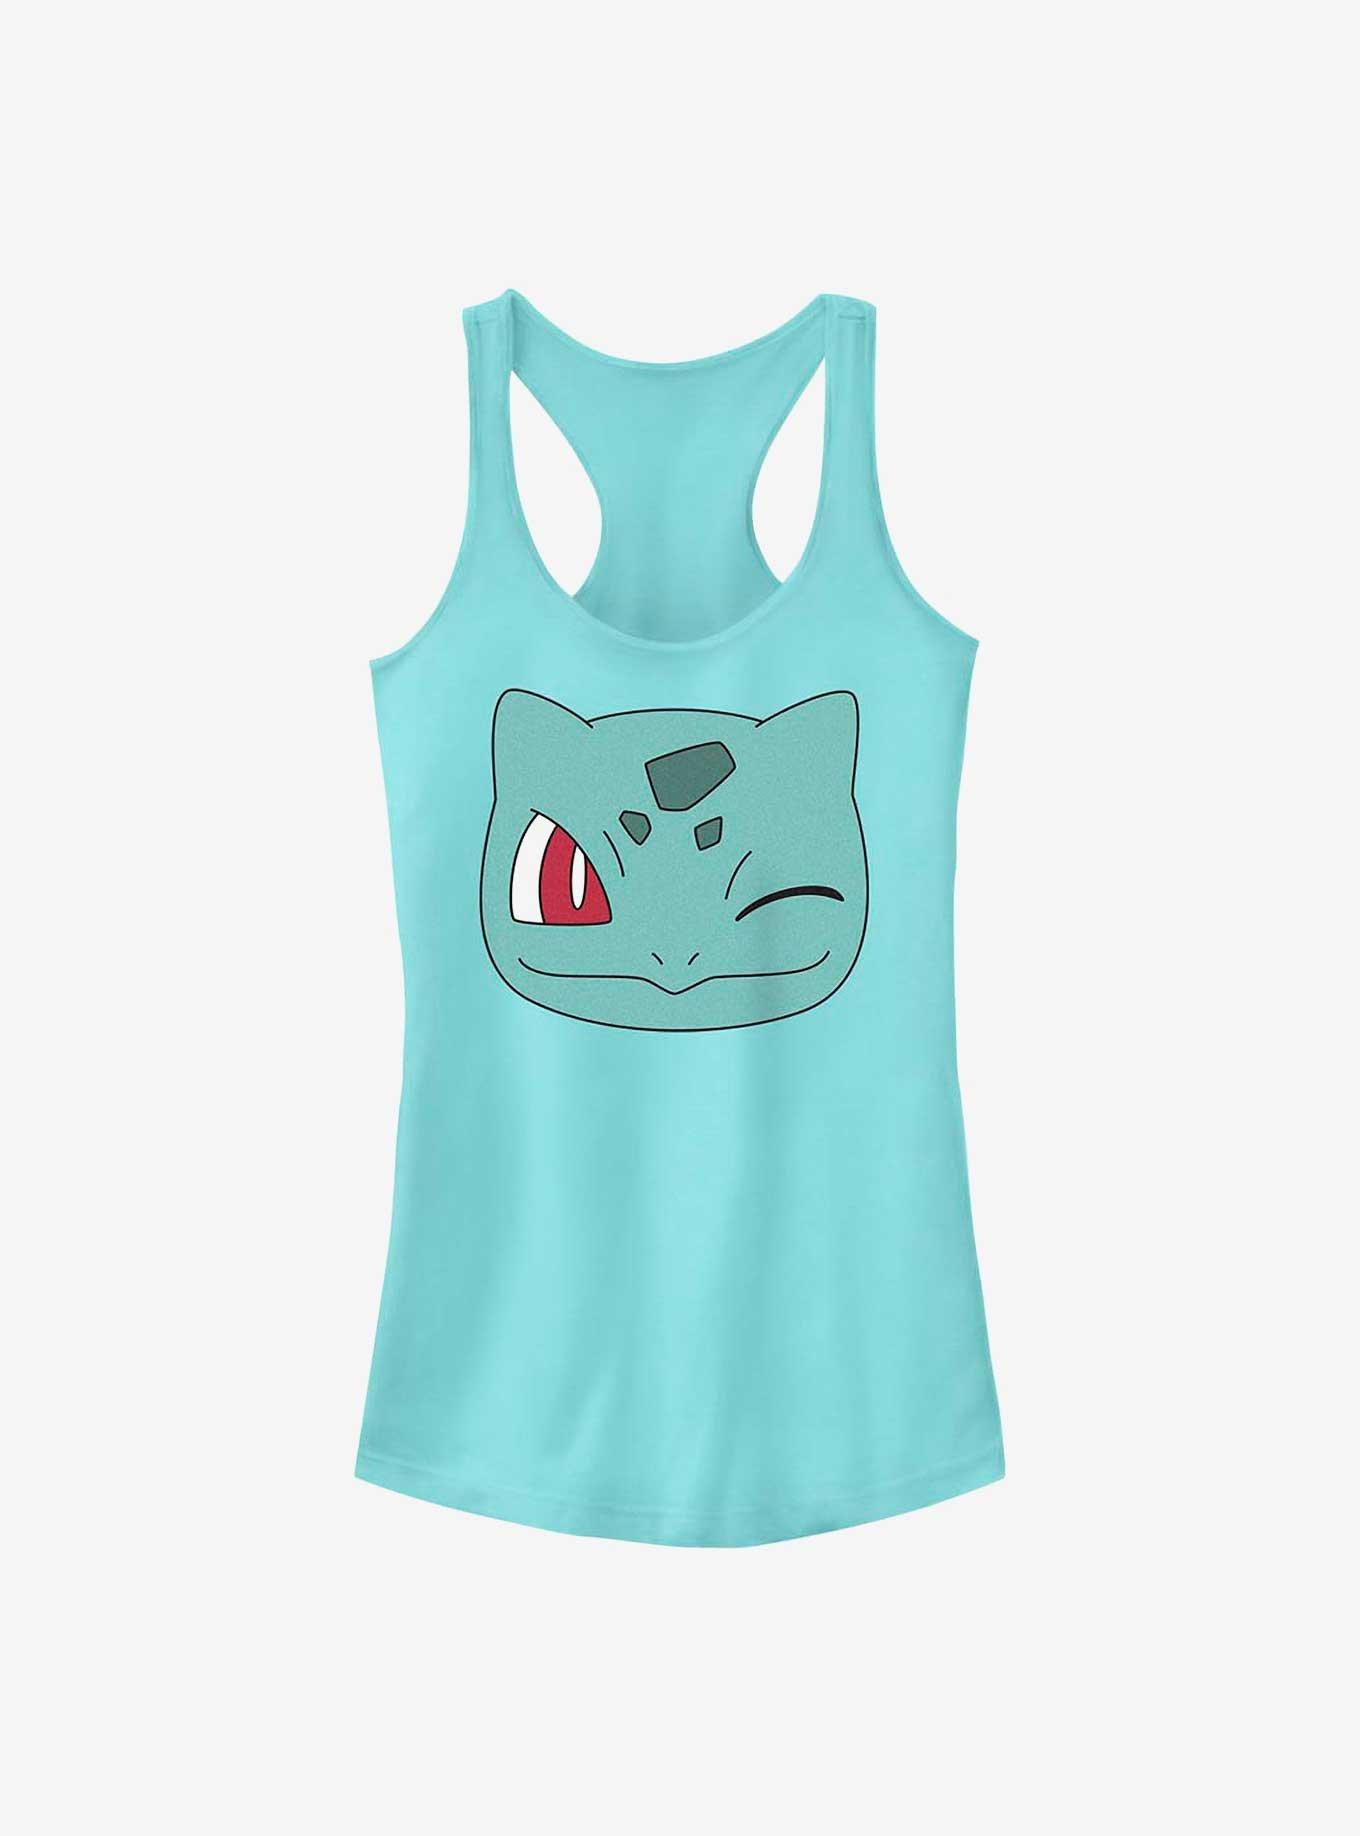 Pokemon Bulbasaur Wink Face Girls Tank, CANCUN, hi-res